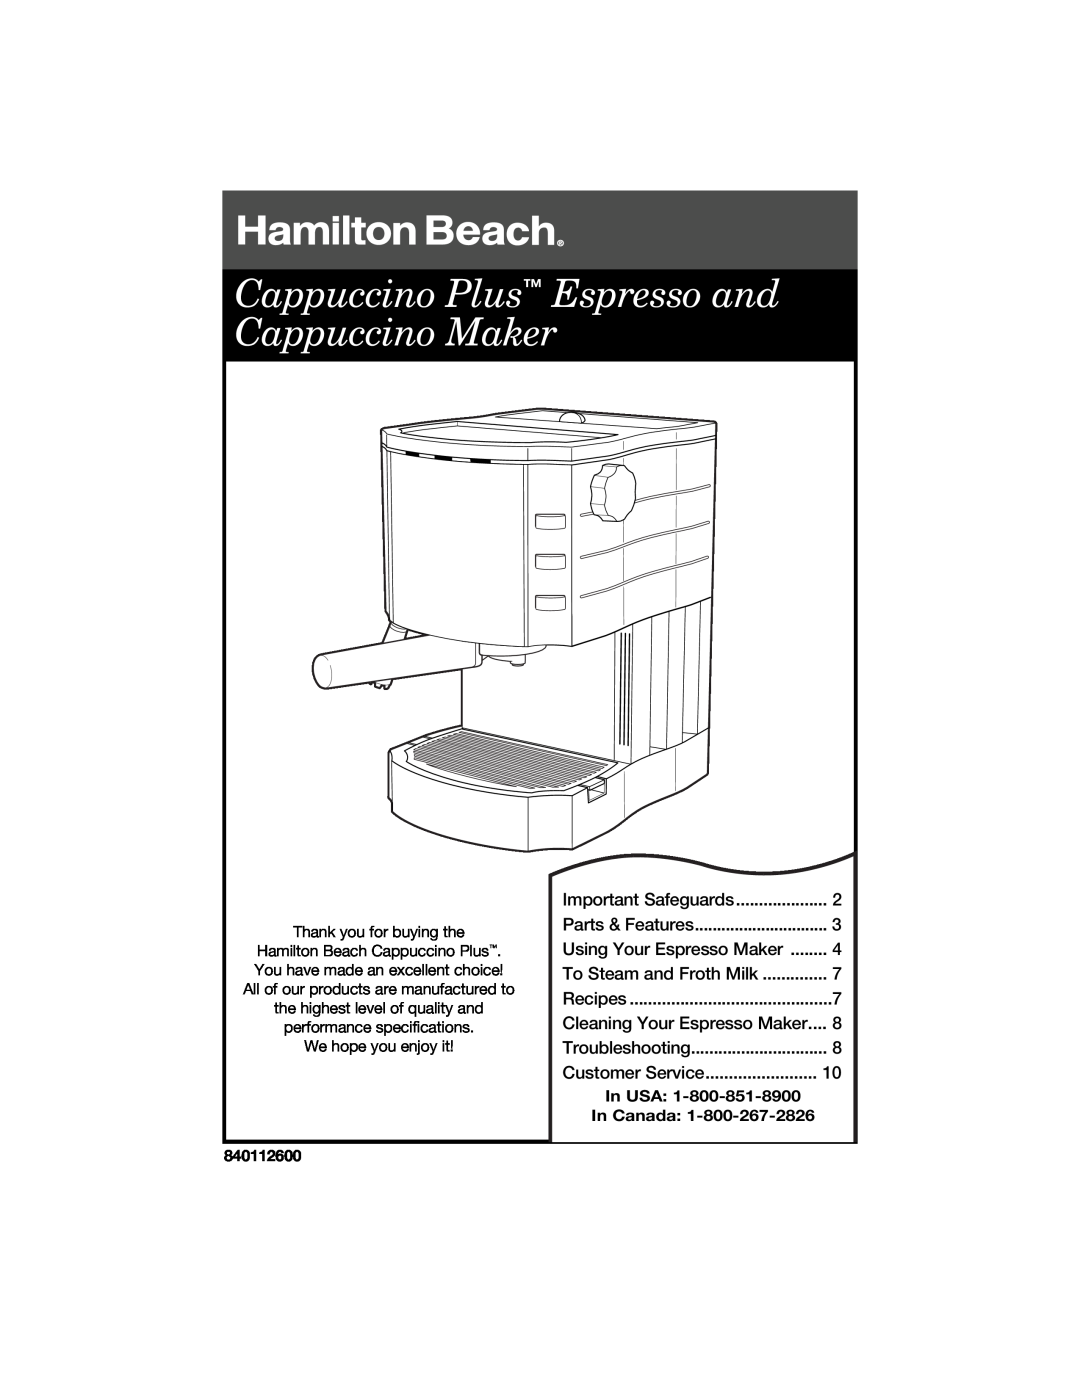 Hamilton Beach specifications Cappuccino Plus Espresso and Cappuccino Maker, Cleaning Your Espresso Maker, 840112600 